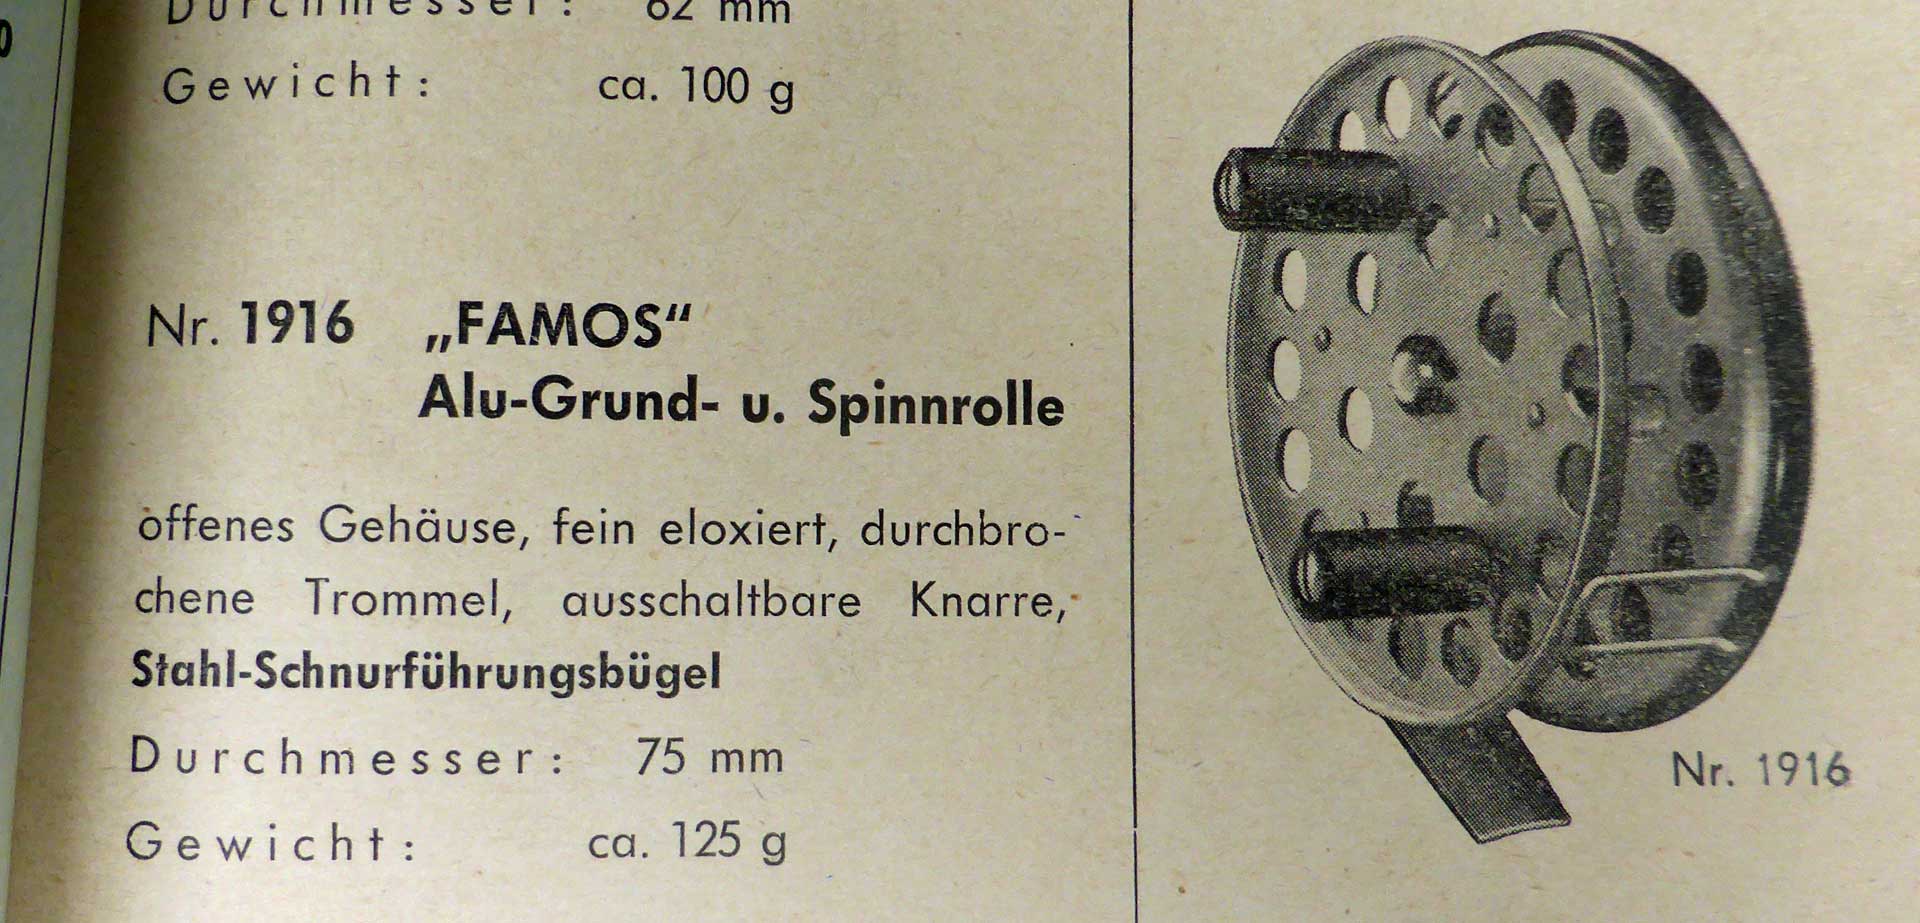 Die Famos im Noris-Katalog der 1950er Jahre mit der Bestellnummer 1916.